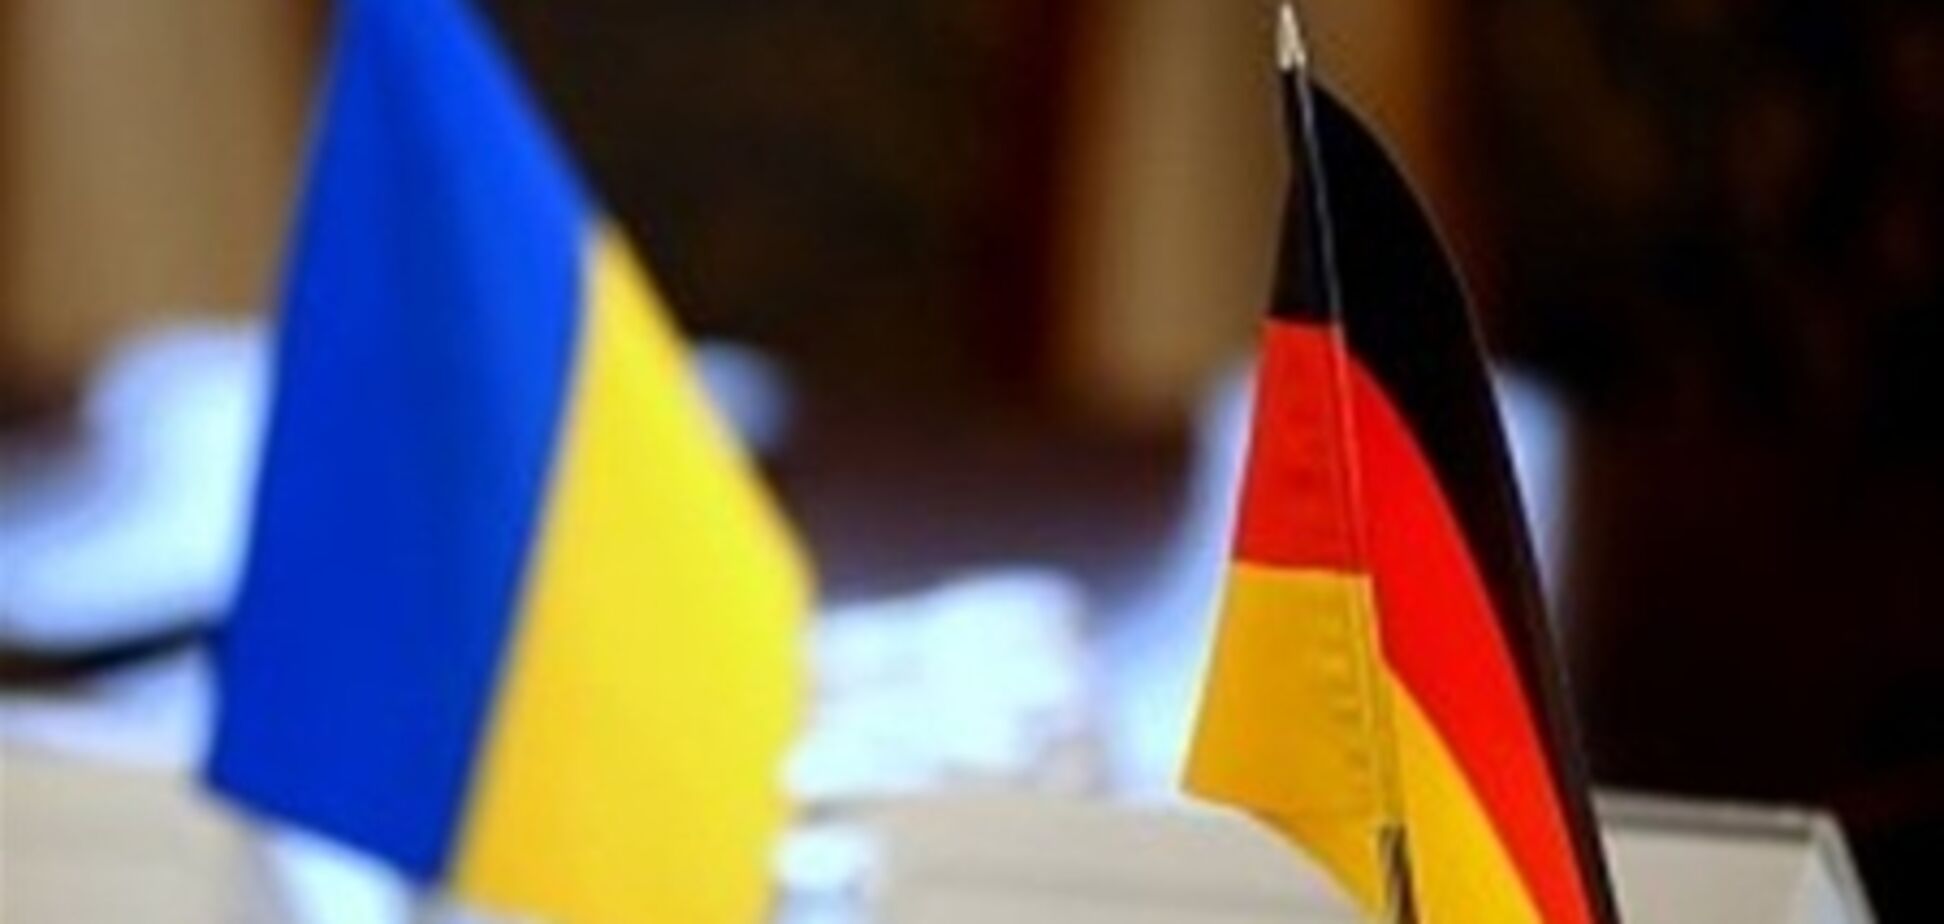 ЗМІ: посла України викликали в МЗС Німеччини через Власенко